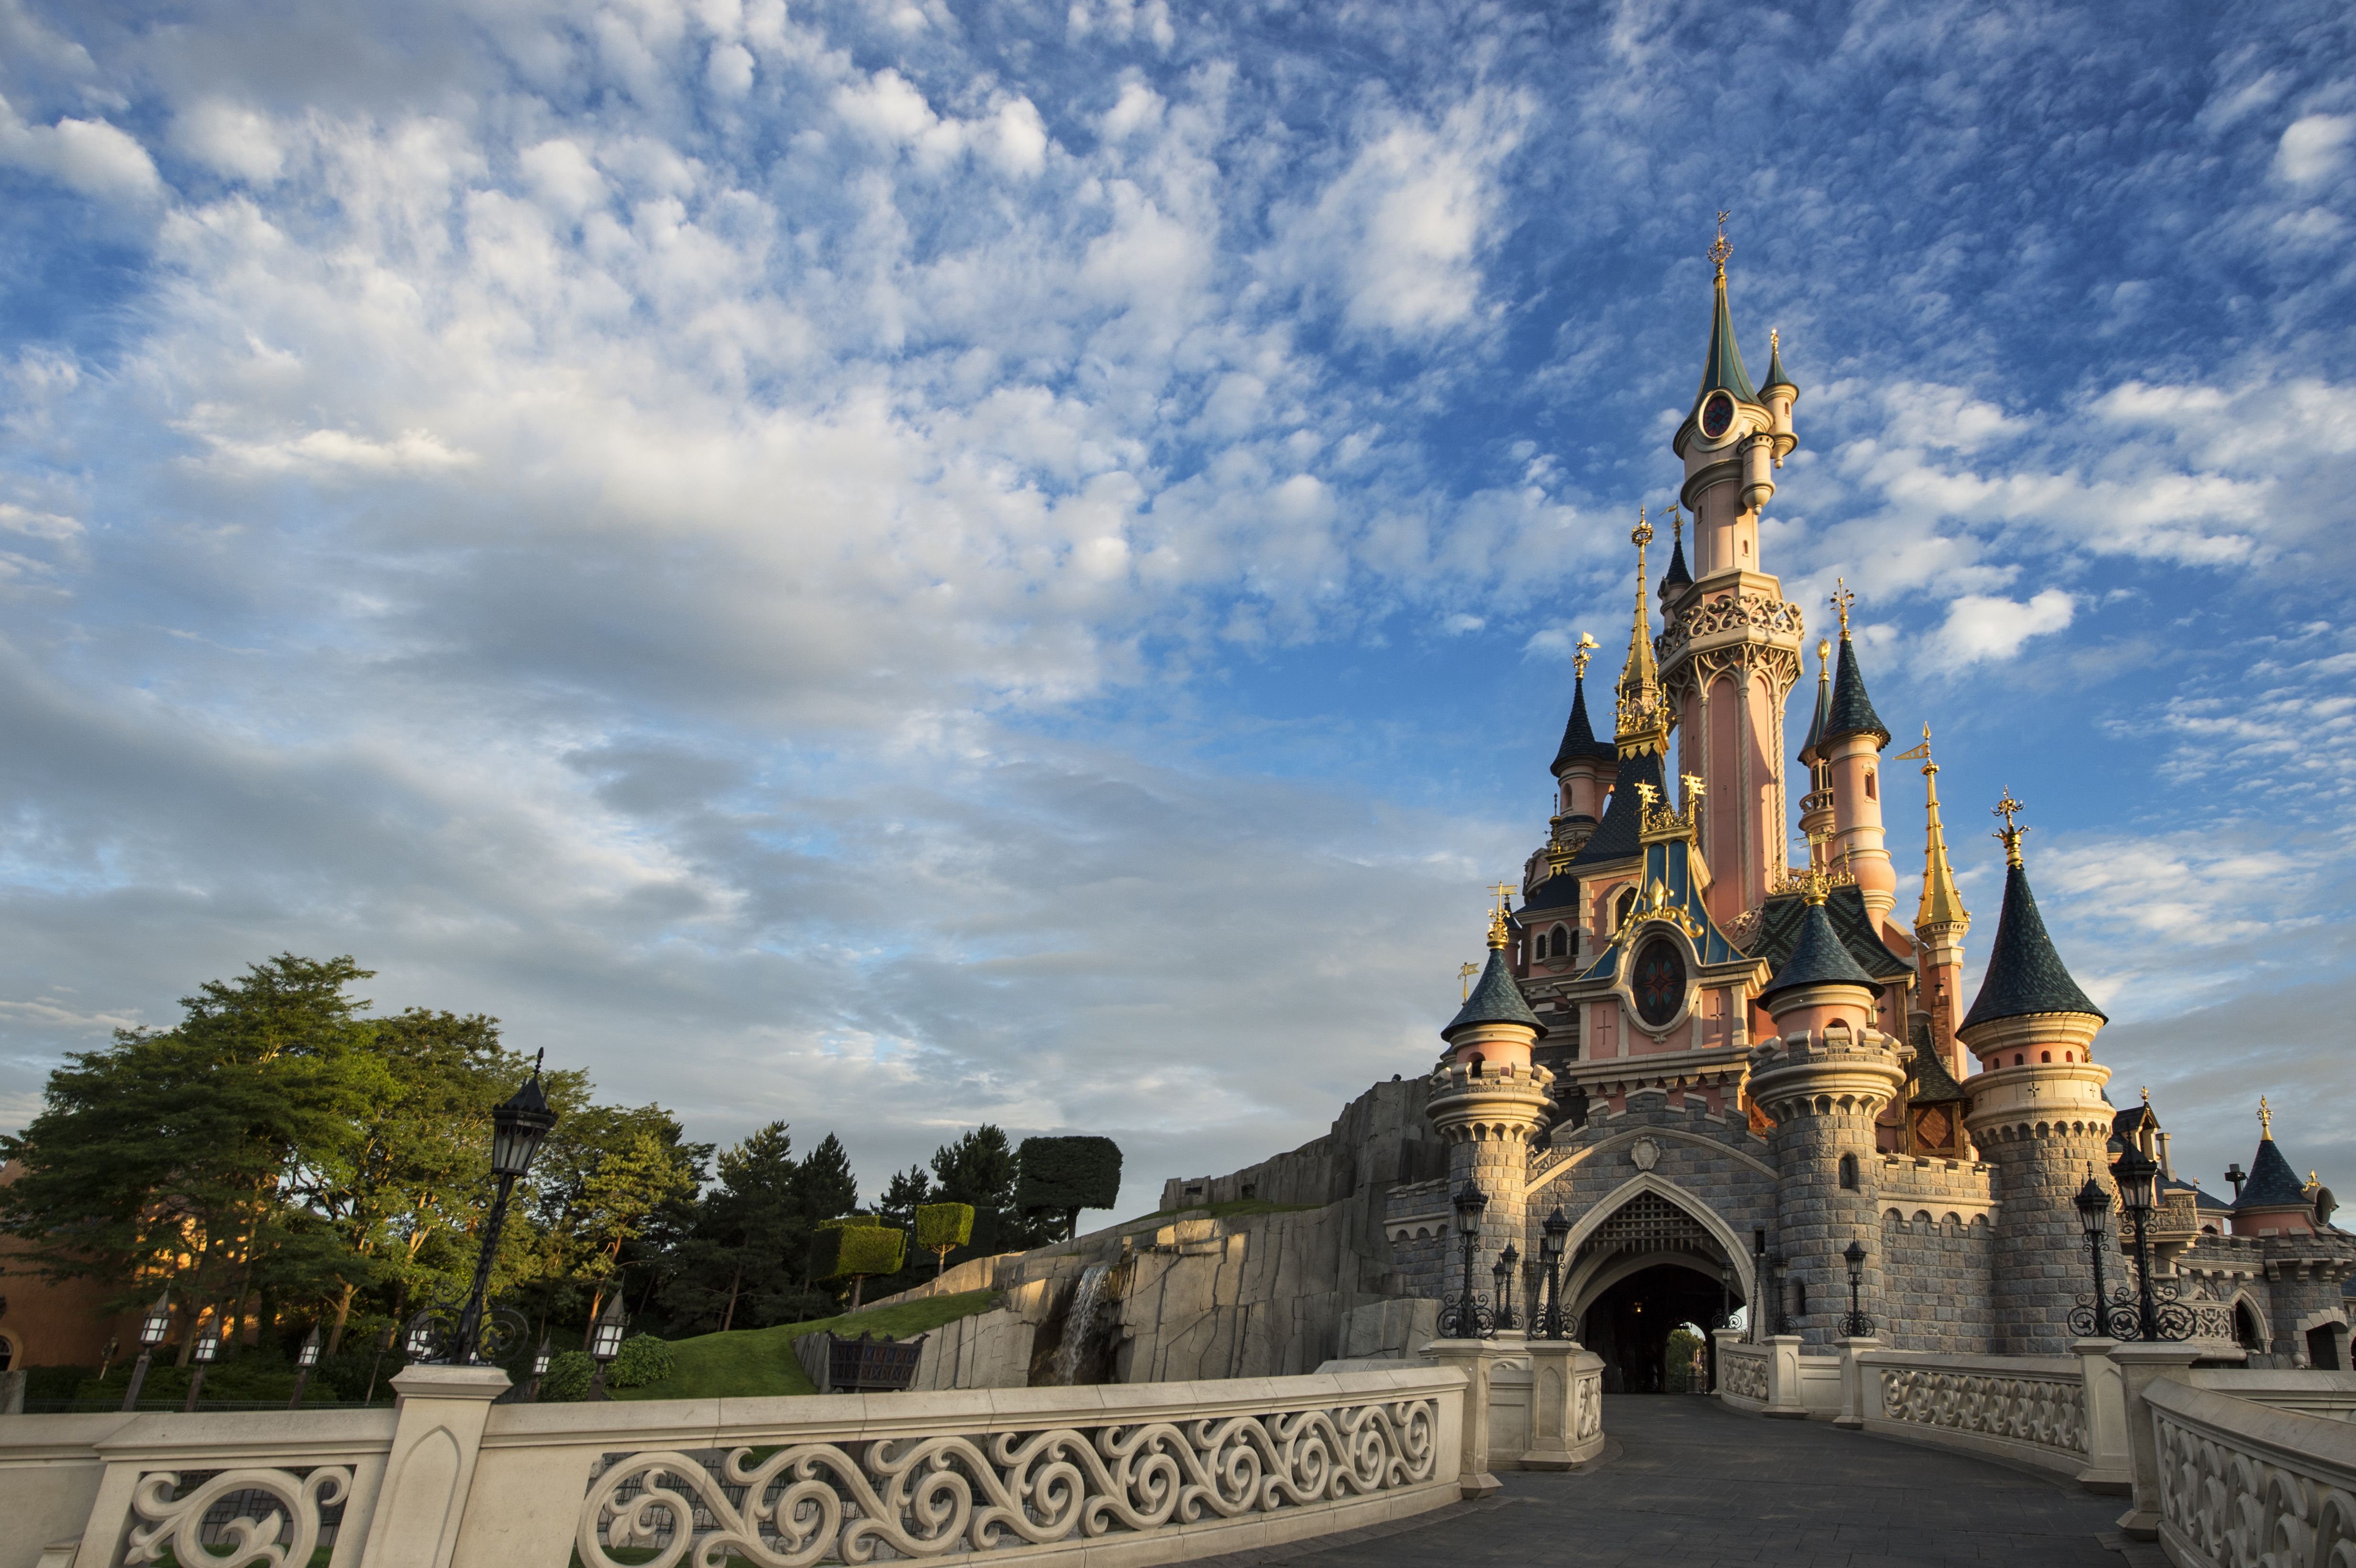 Free download Disneyland Paris a 2 billion expansion plan